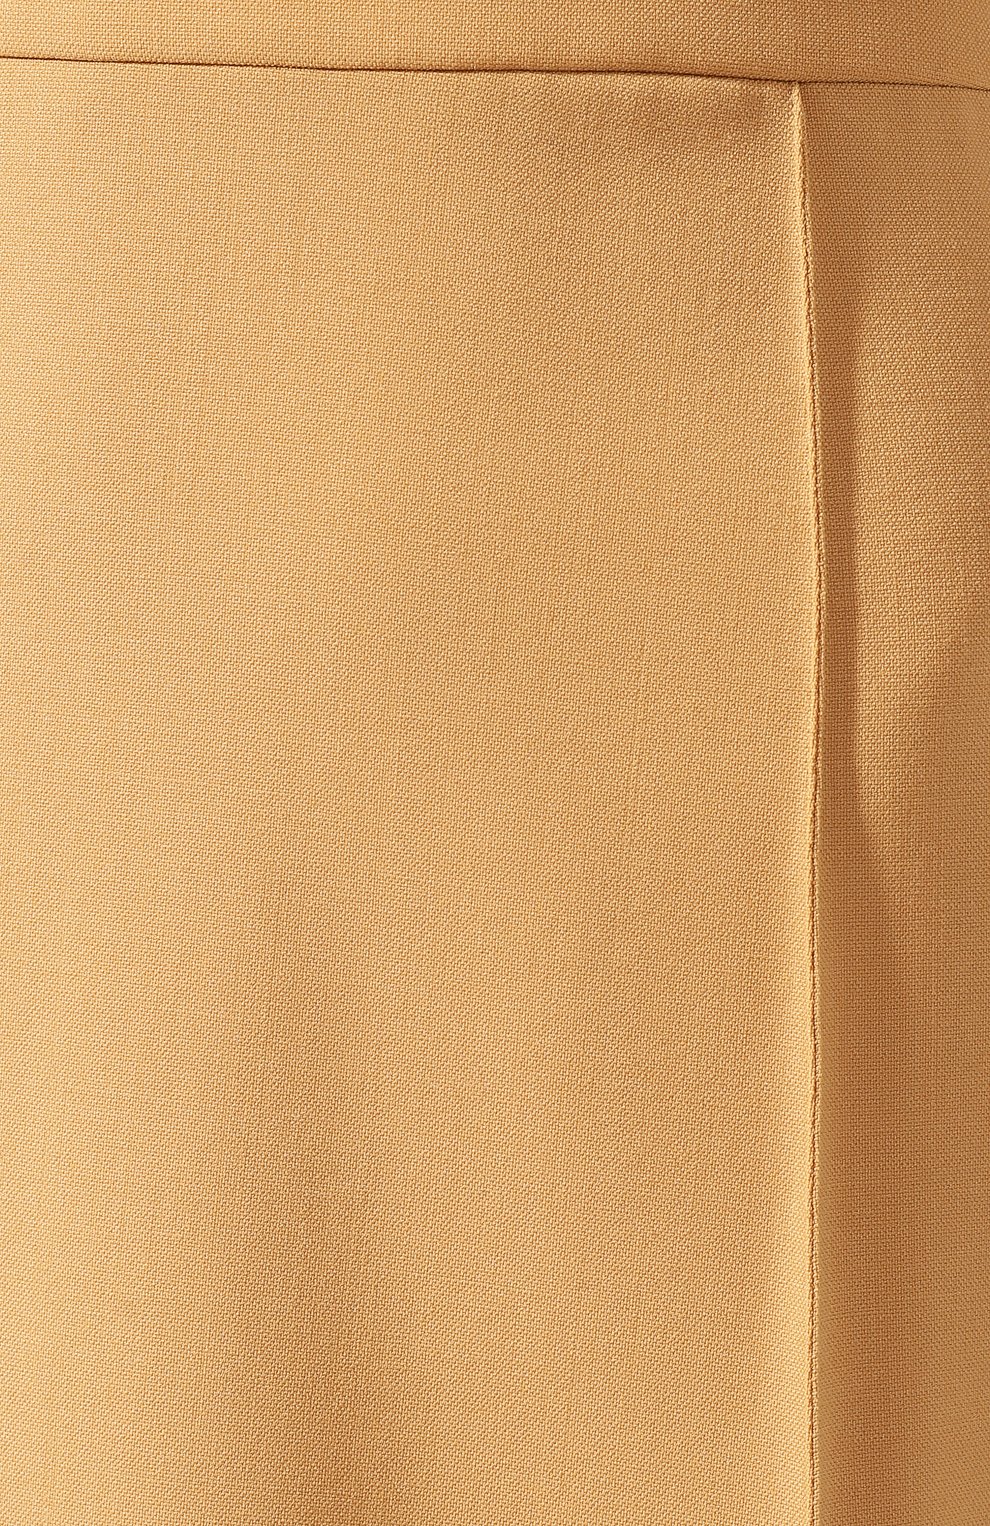 Женская однотонная юбка-миди из шерсти CHLOÉ бежевого цвета, арт. CHC18AJU25062 | Фото 5 (Материал внешний: Шерсть; Женское Кросс-КТ: Юбка-одежда; Длина Ж (юбки, платья, шорты): Миди; Статус проверки: Проверено, Проверена категория)